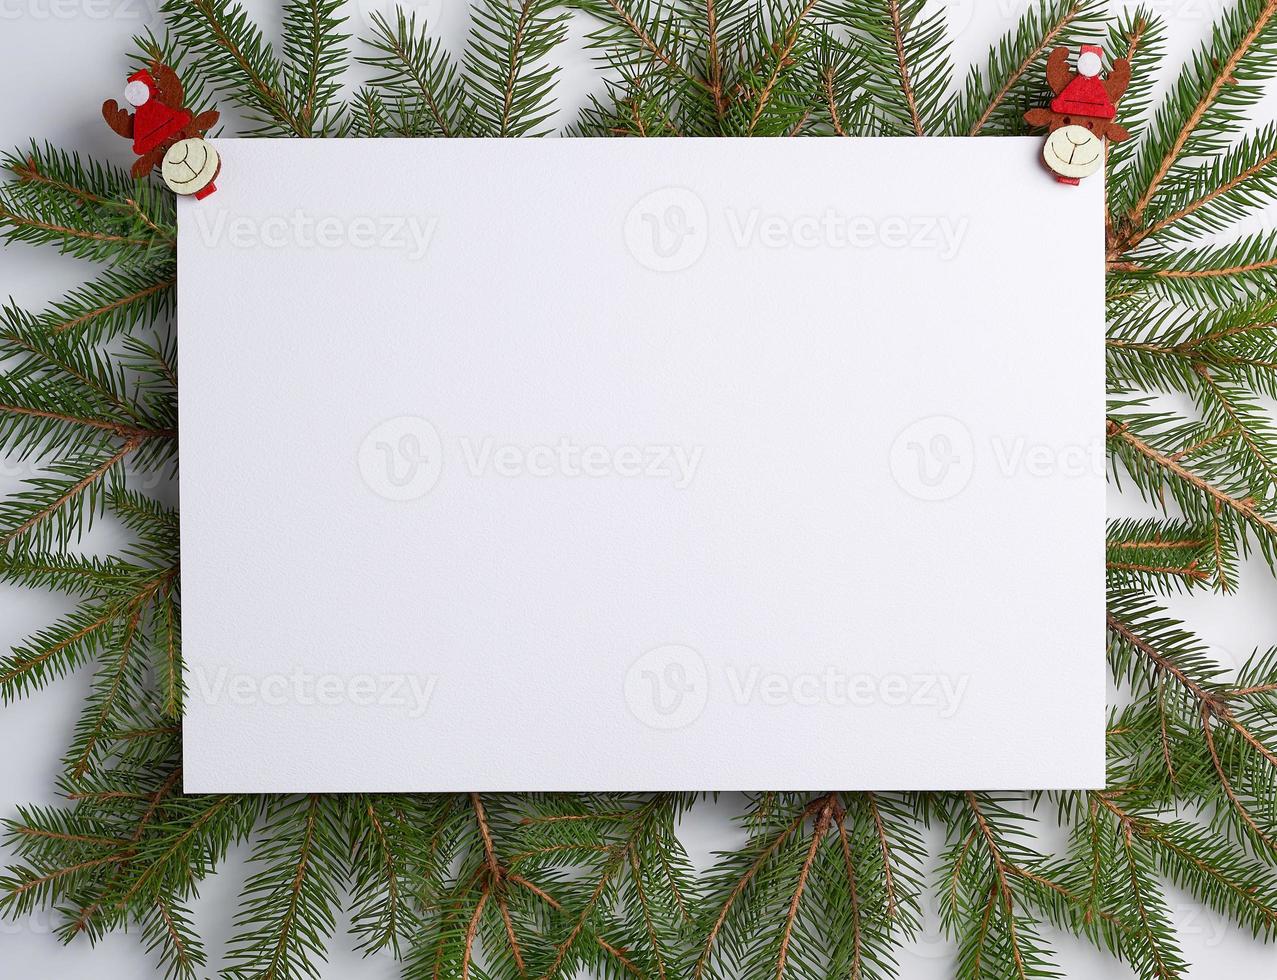 felicitatie- Kerstmis achtergrond met een leeg wit vel en groen takken van net versierd met vakantie speelgoed foto